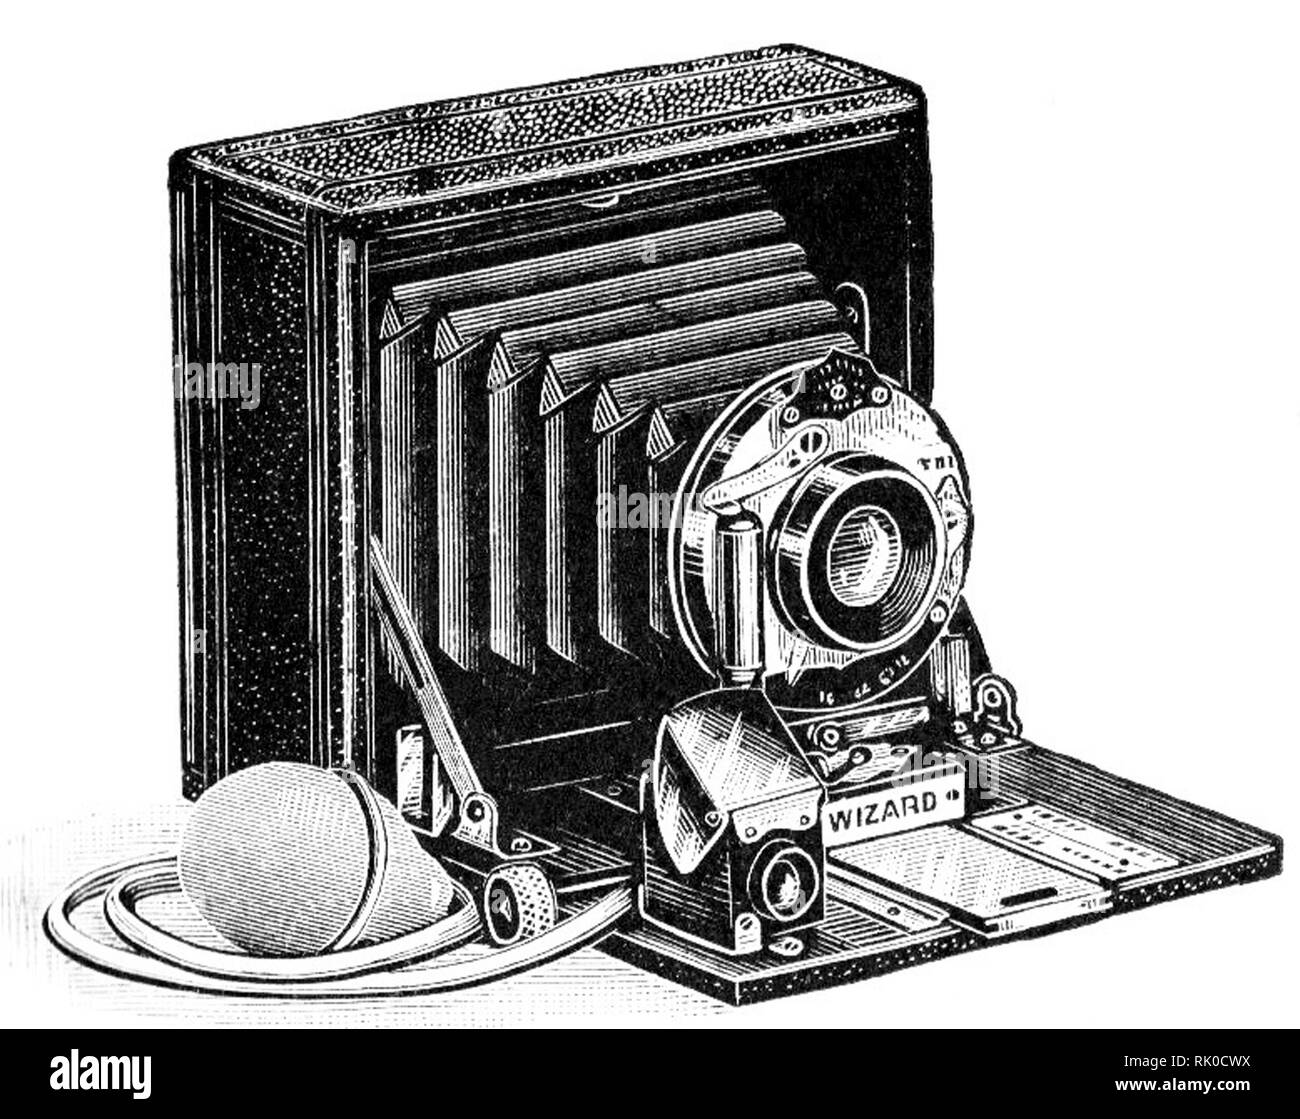 Vintage vecchia lastra fotografica fotocamera - Questo è stato chiamato la procedura guidata. Questi antichi telecamere usate lastre di vetro per produrre il negativo. Foto Stock